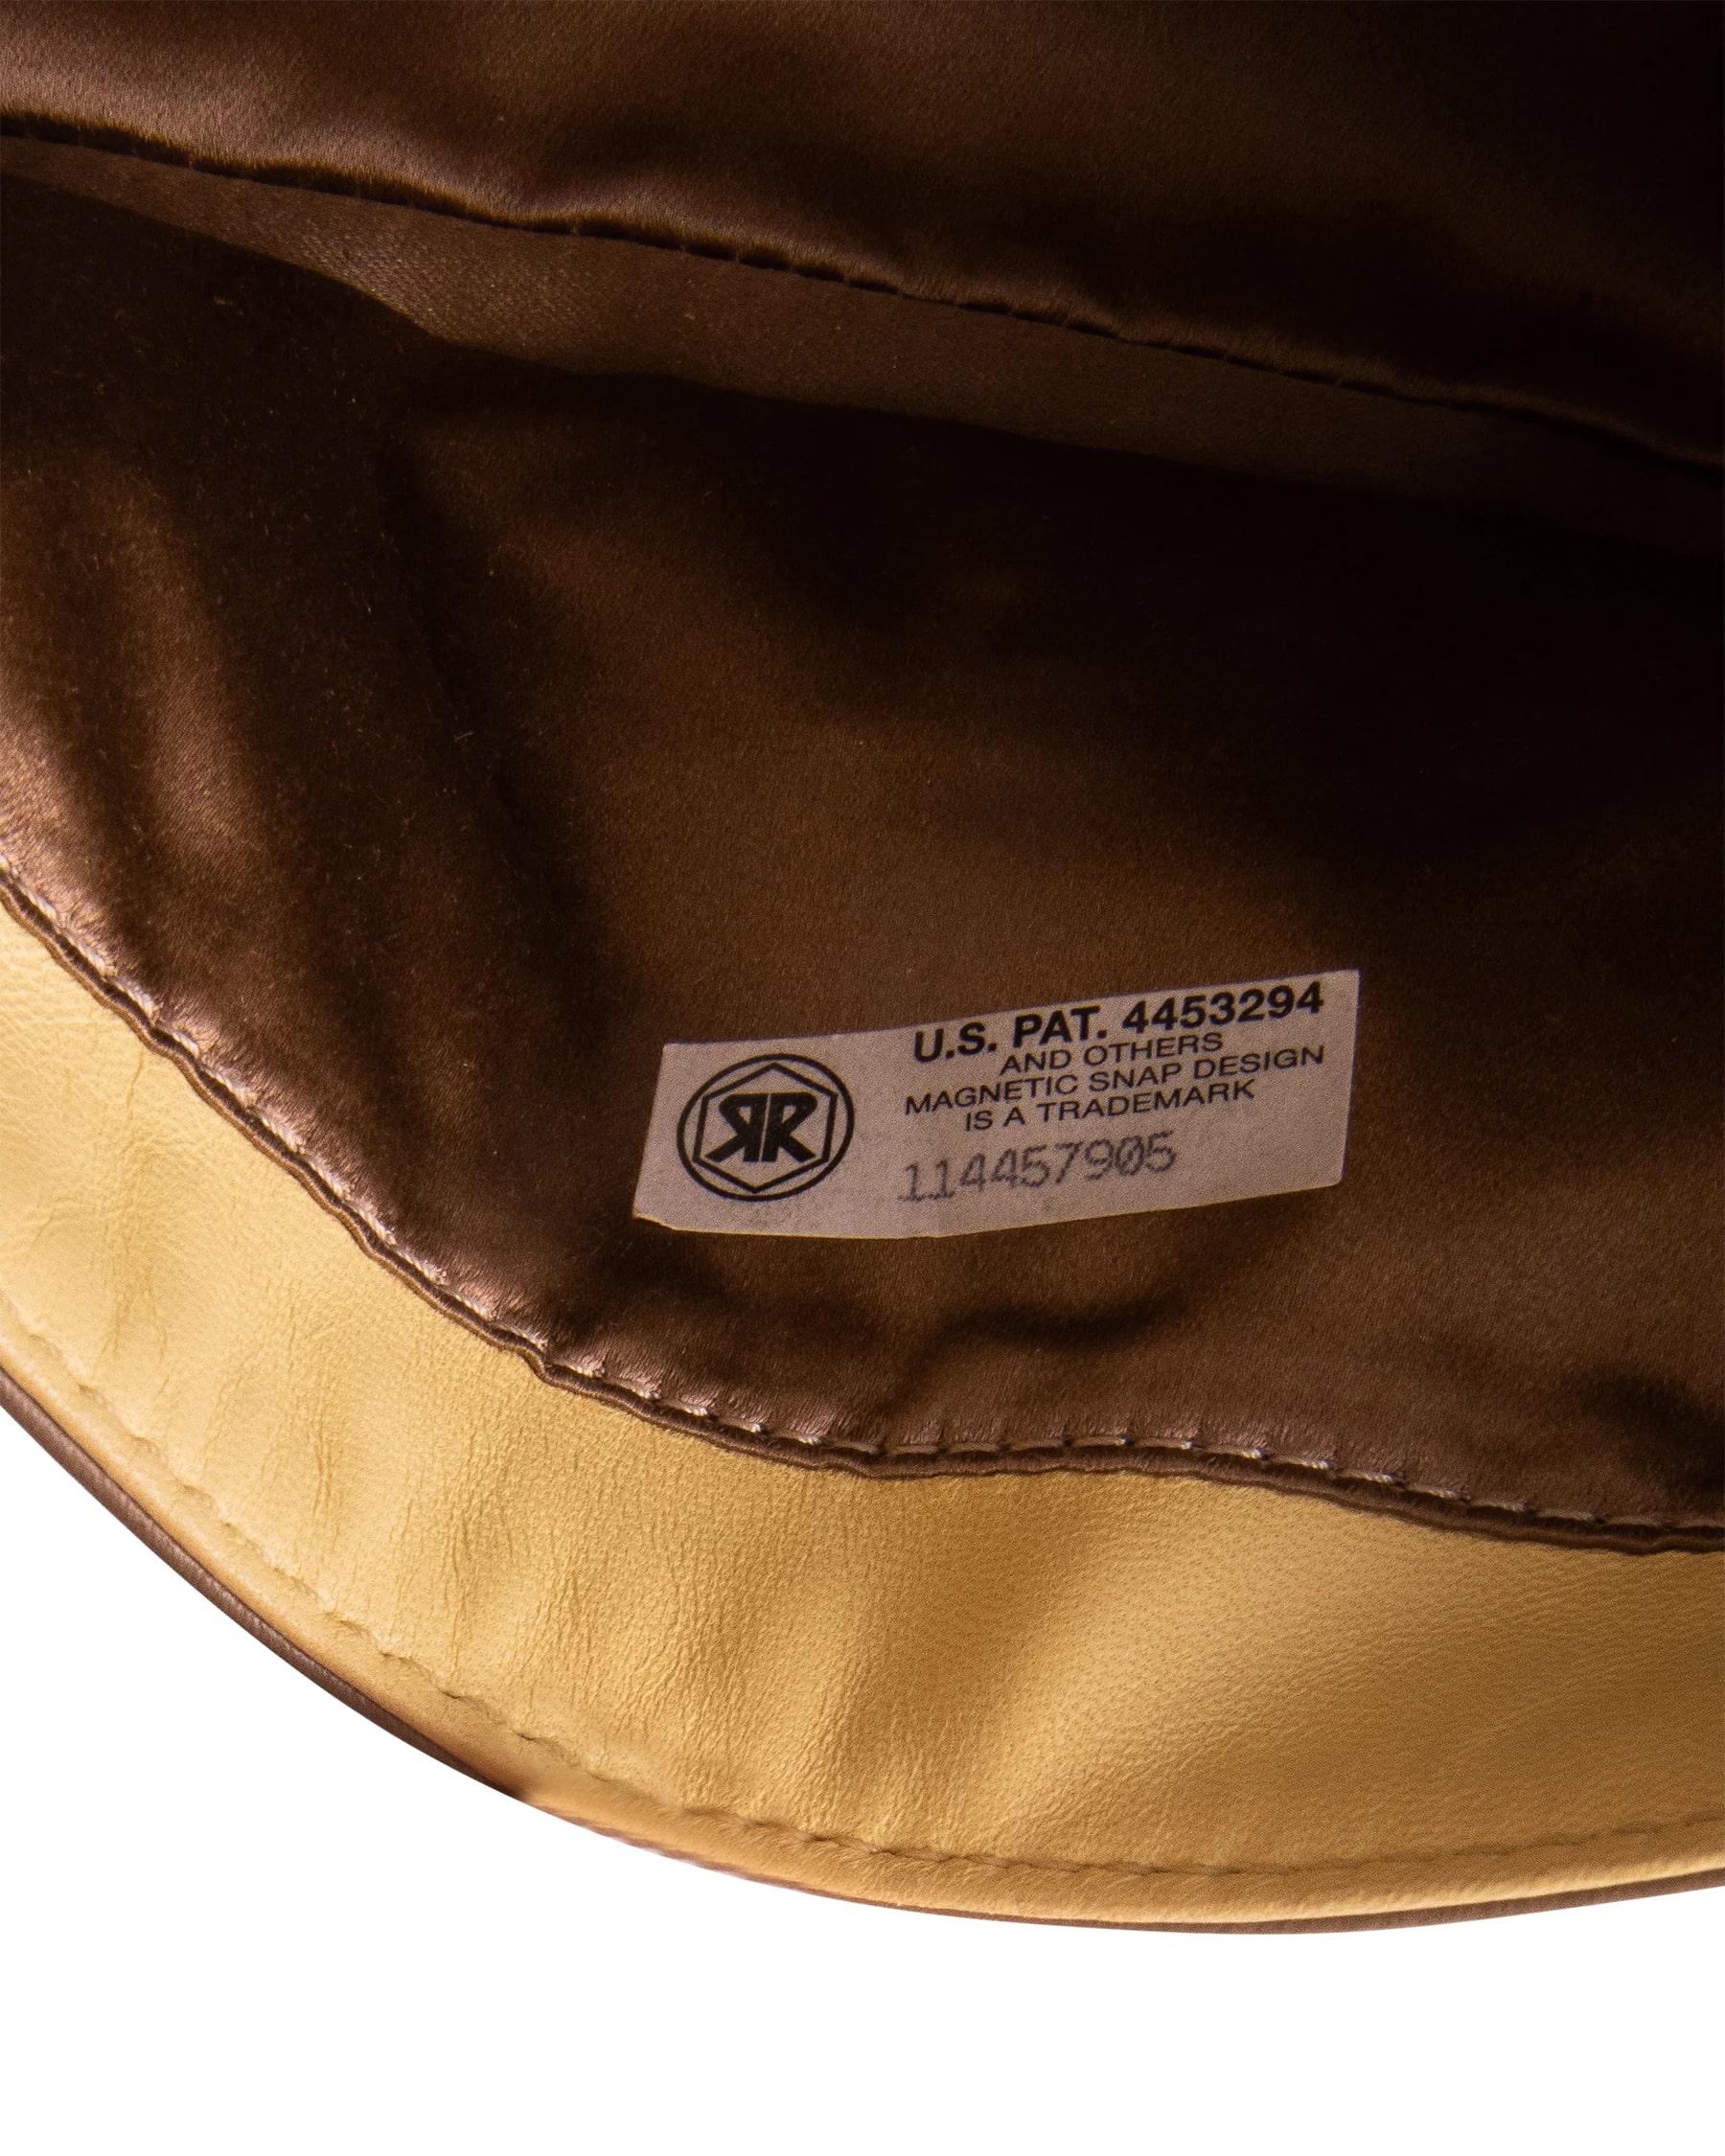 c. 2000 Fendi Neutral Leather Color Block Shoulder Bag 3